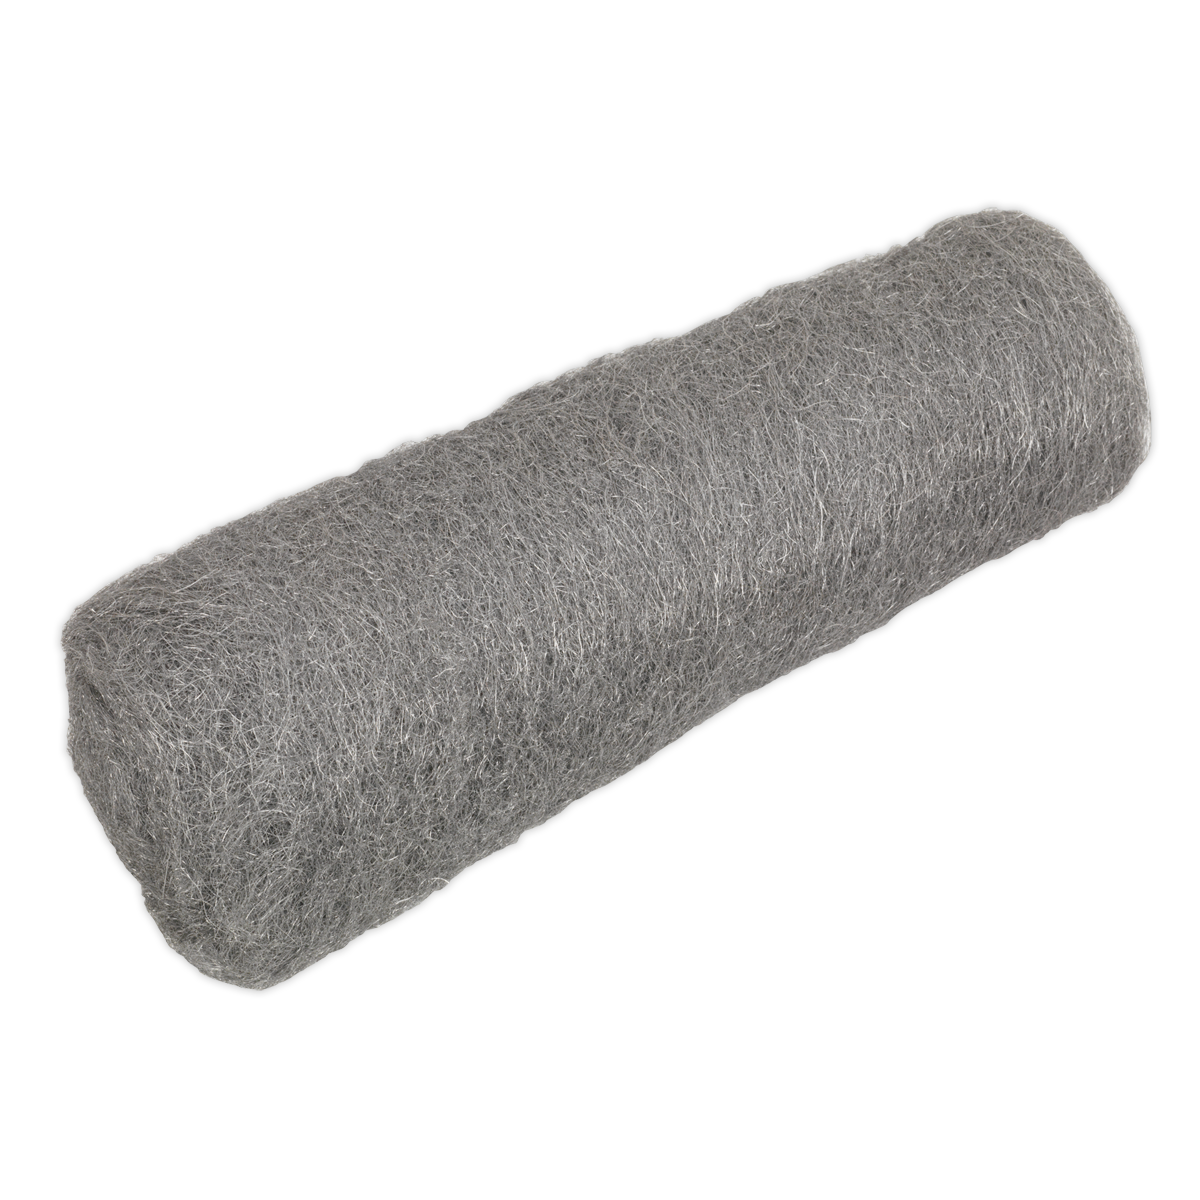 Sealey Steel Wool #1 Medium Grade 450g